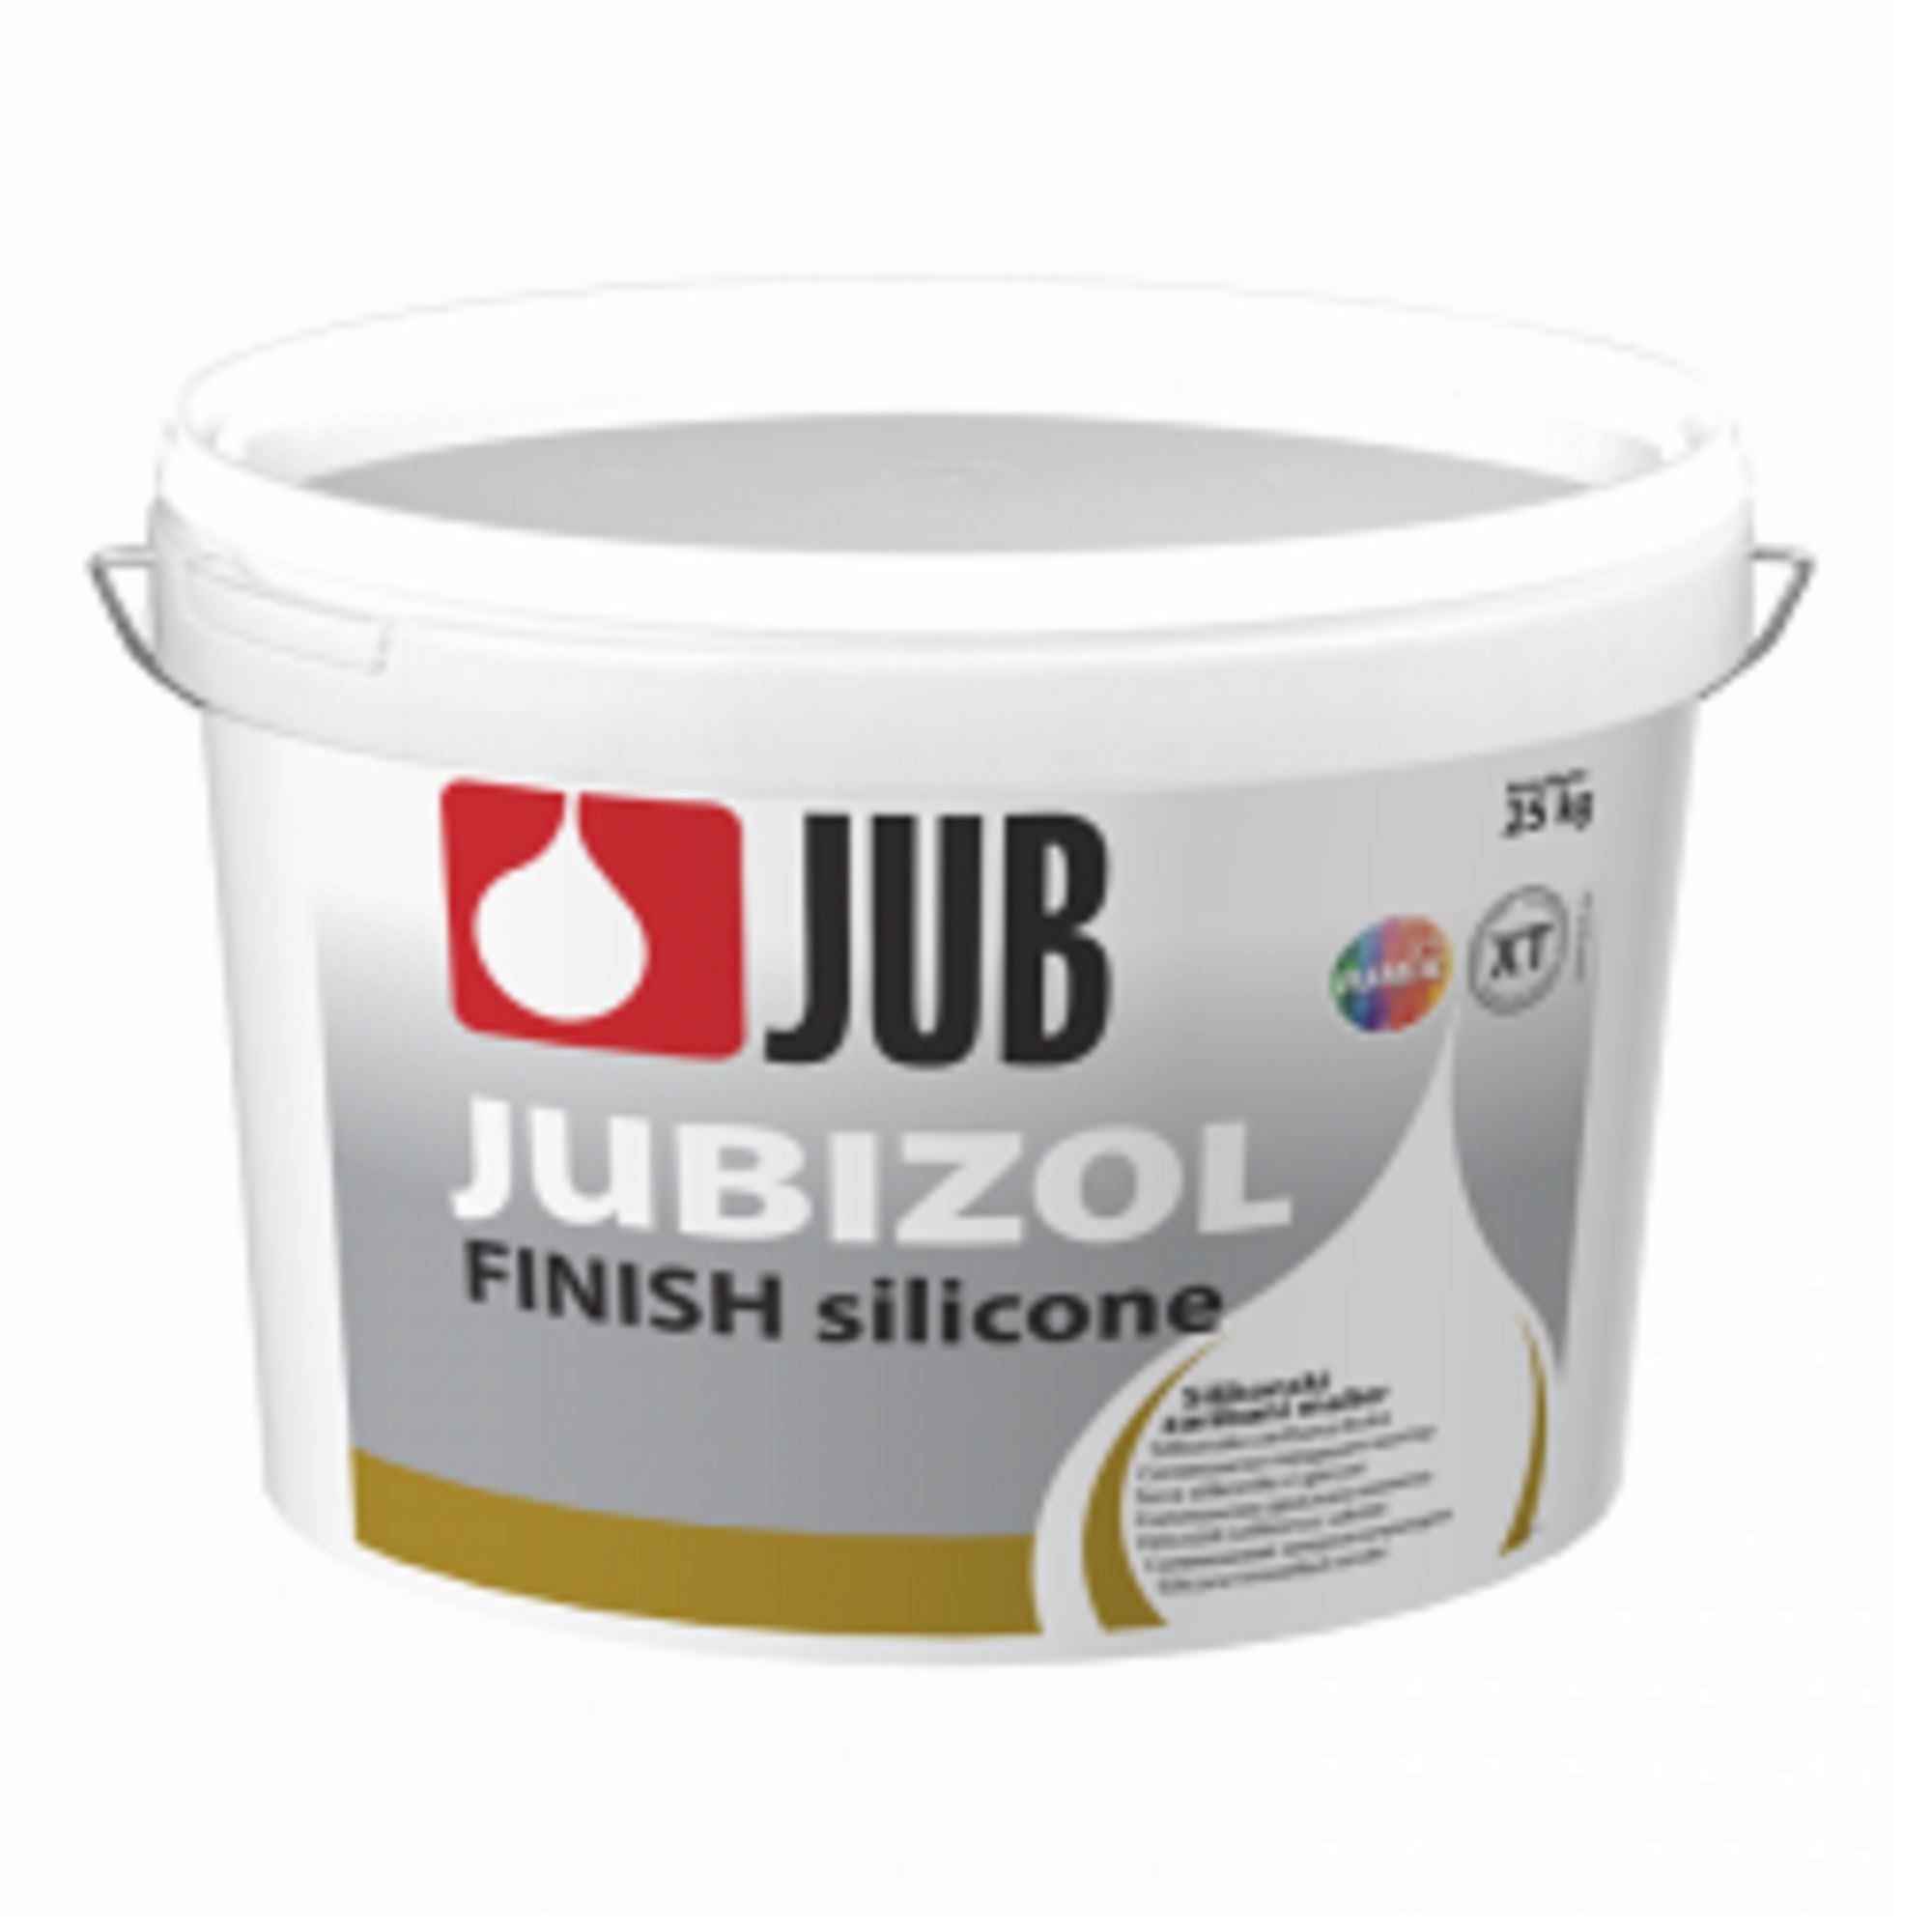 JUB JUBIZOL Silicone finish XT silikonová drásaná omítka 25 kg